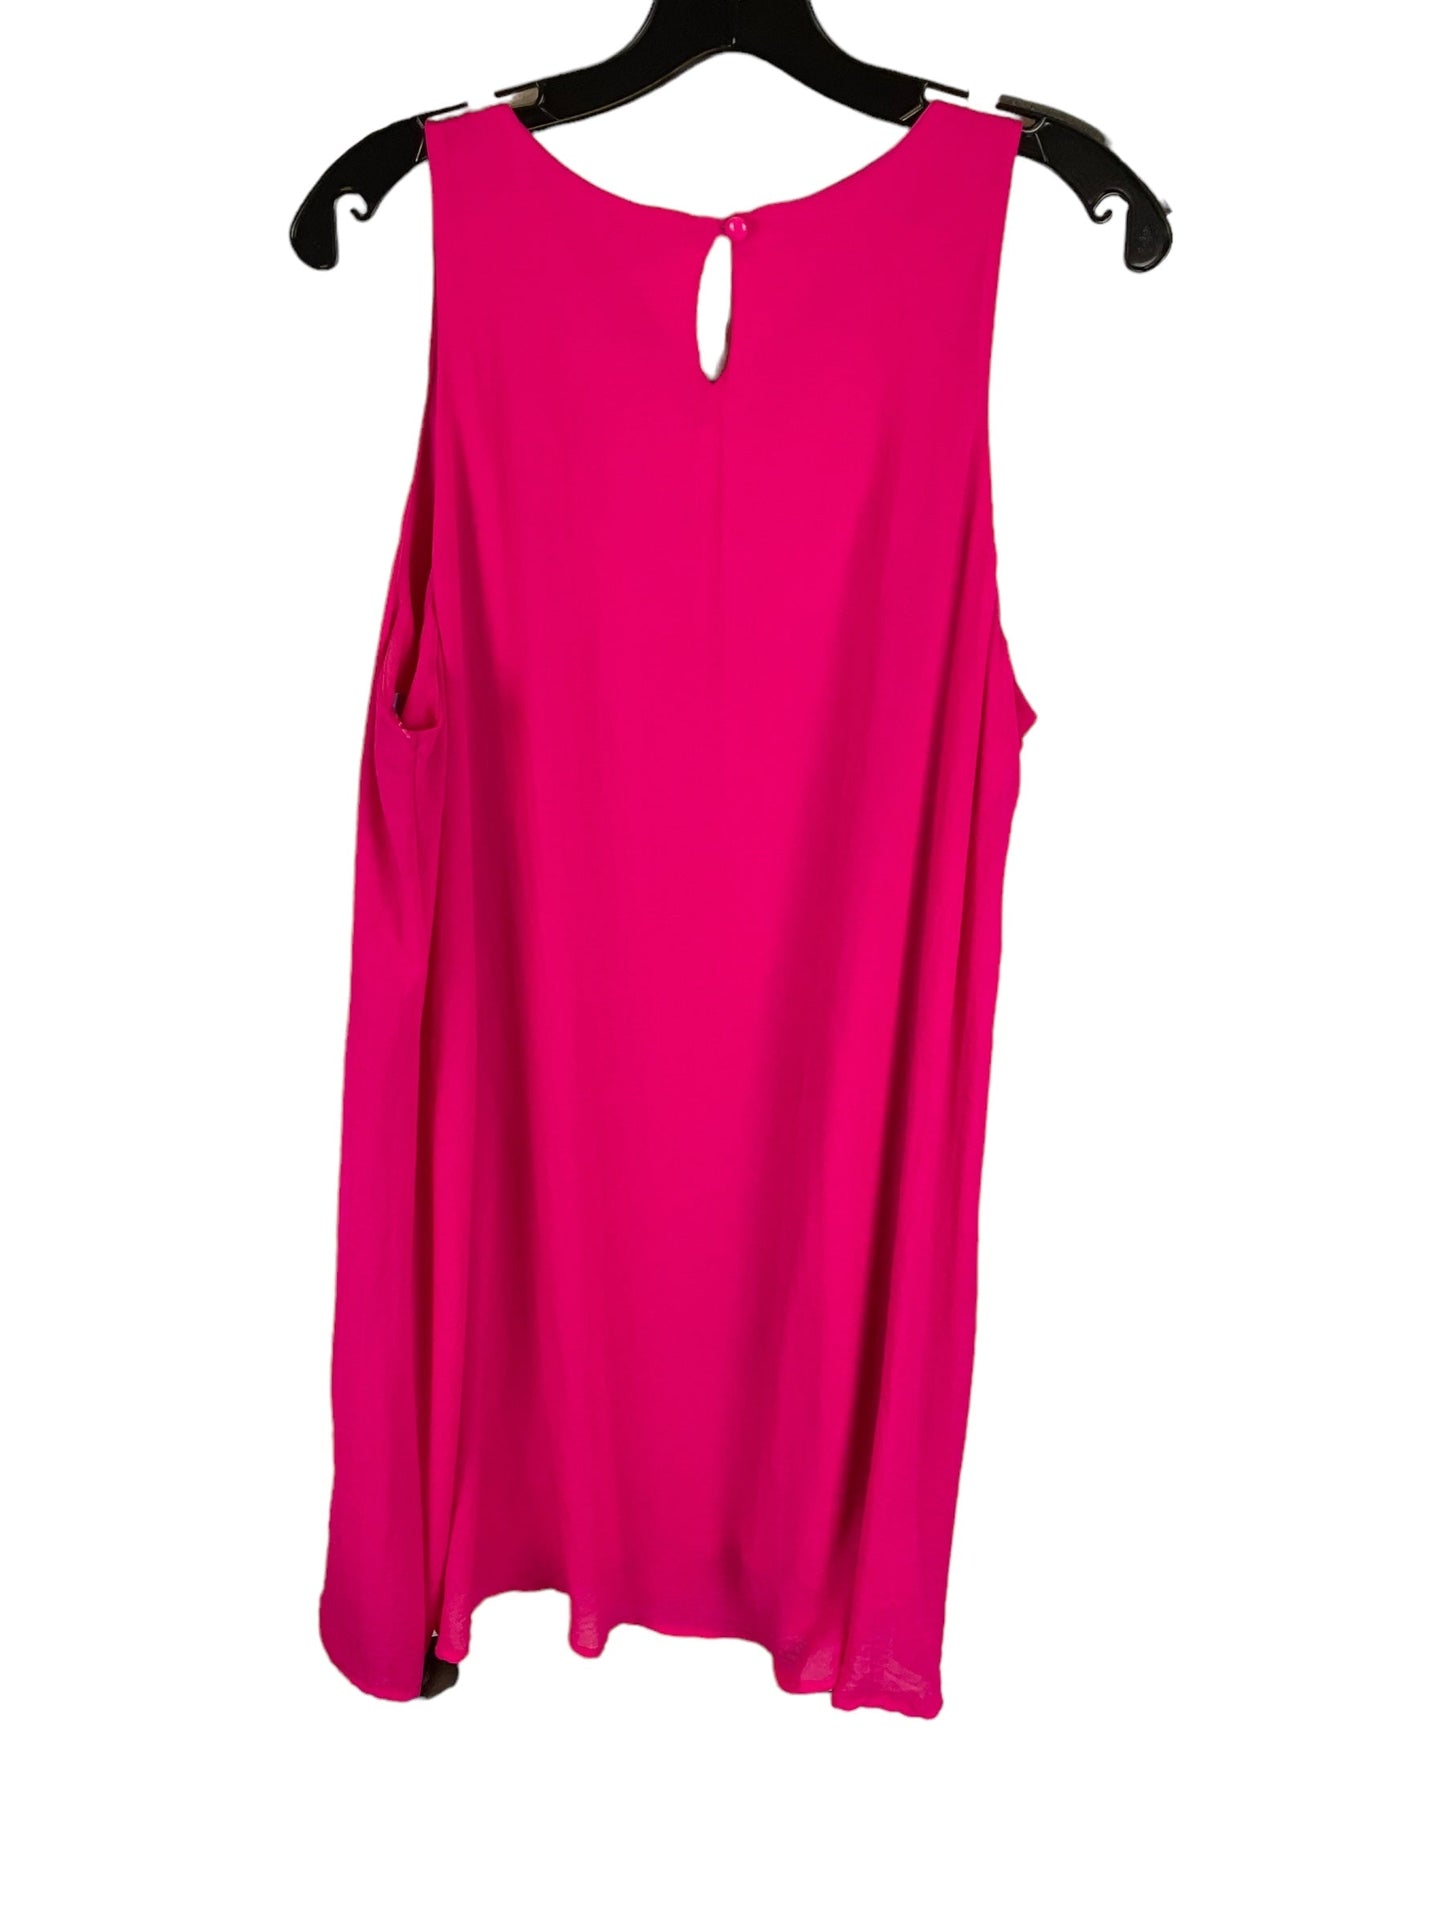 Pink Dress Casual Short Tacera, Size 1x